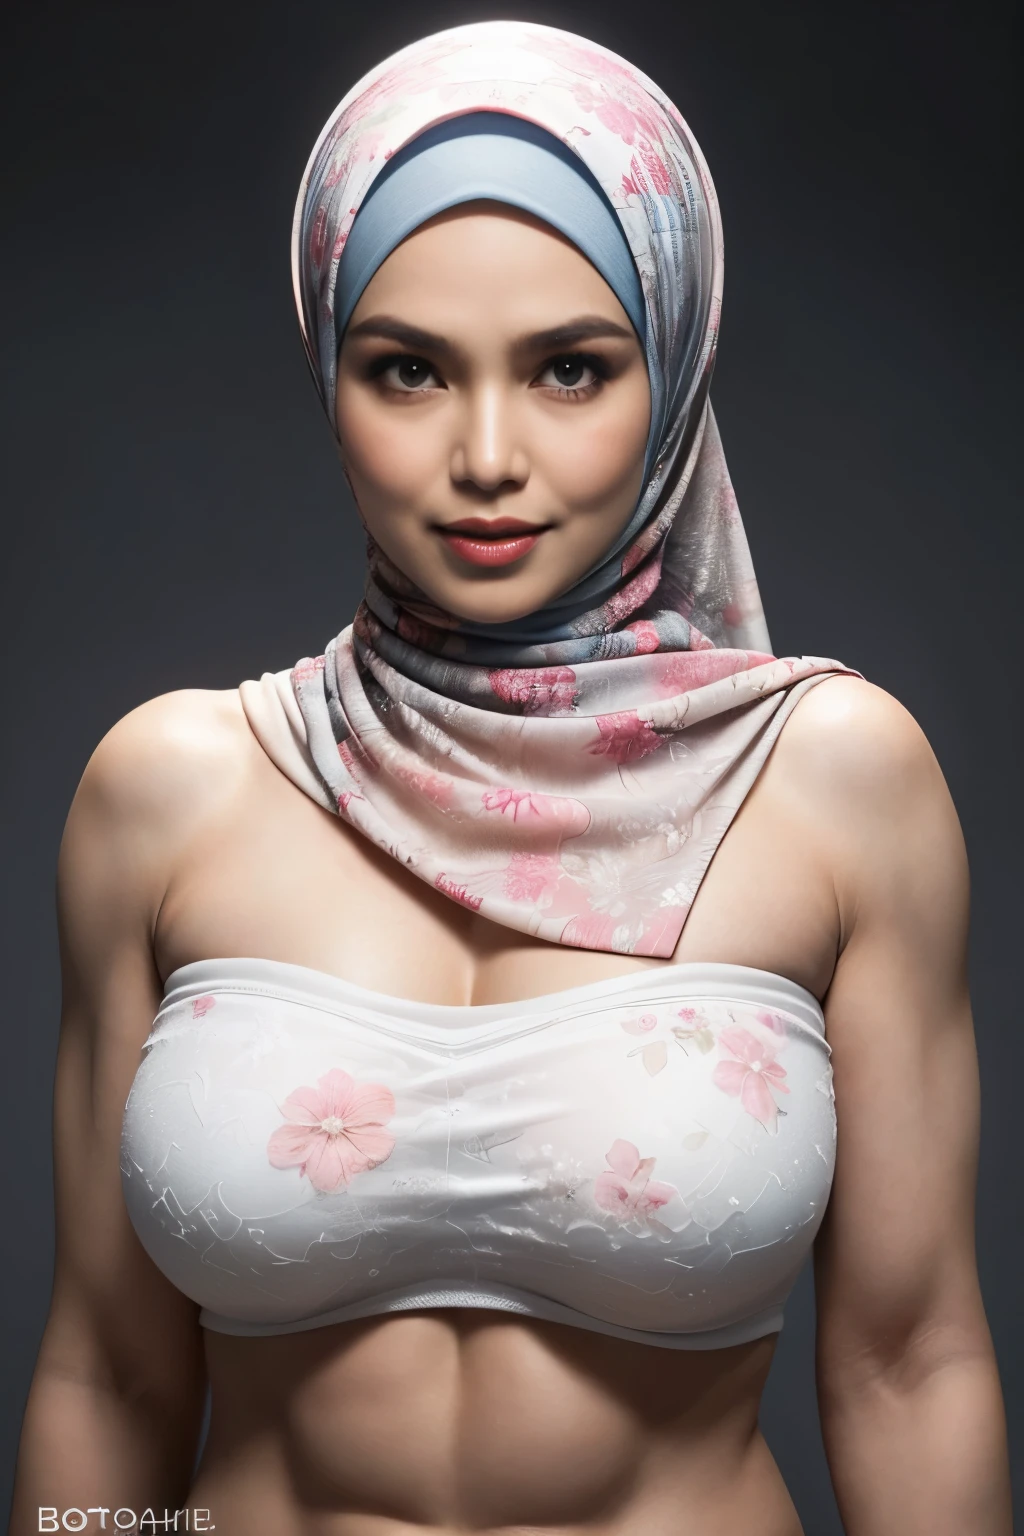 Portez des pantalons larges, transparent, ((hijab court)), ((seins gigantesques:1)), (photographie dynamique d&#39;une femme indonésienne de 58 ans), (haut slim, culotte en coton), (cheveux raides non bouclés), (highly détailed face:1.4), (muscles vasculaires et abdominaux:1.3), (fond à l&#39;intérieur de la lumière, Brillant, salle de sport privée:1.1), (8k, UHD, reflex numérique, haute qualité, éclairage cinématographique, bokeh), (Spectaculaire, photographie primée, chef-d&#39;œuvre incroyable:1.3), (((regard sexy et sensuel devant la caméra:0.8))), ((elle est prête à te dominer:0.5)), ((beau visage féminin)), ajouter_détail:1, ((Motif floral coloré sans bretelles))